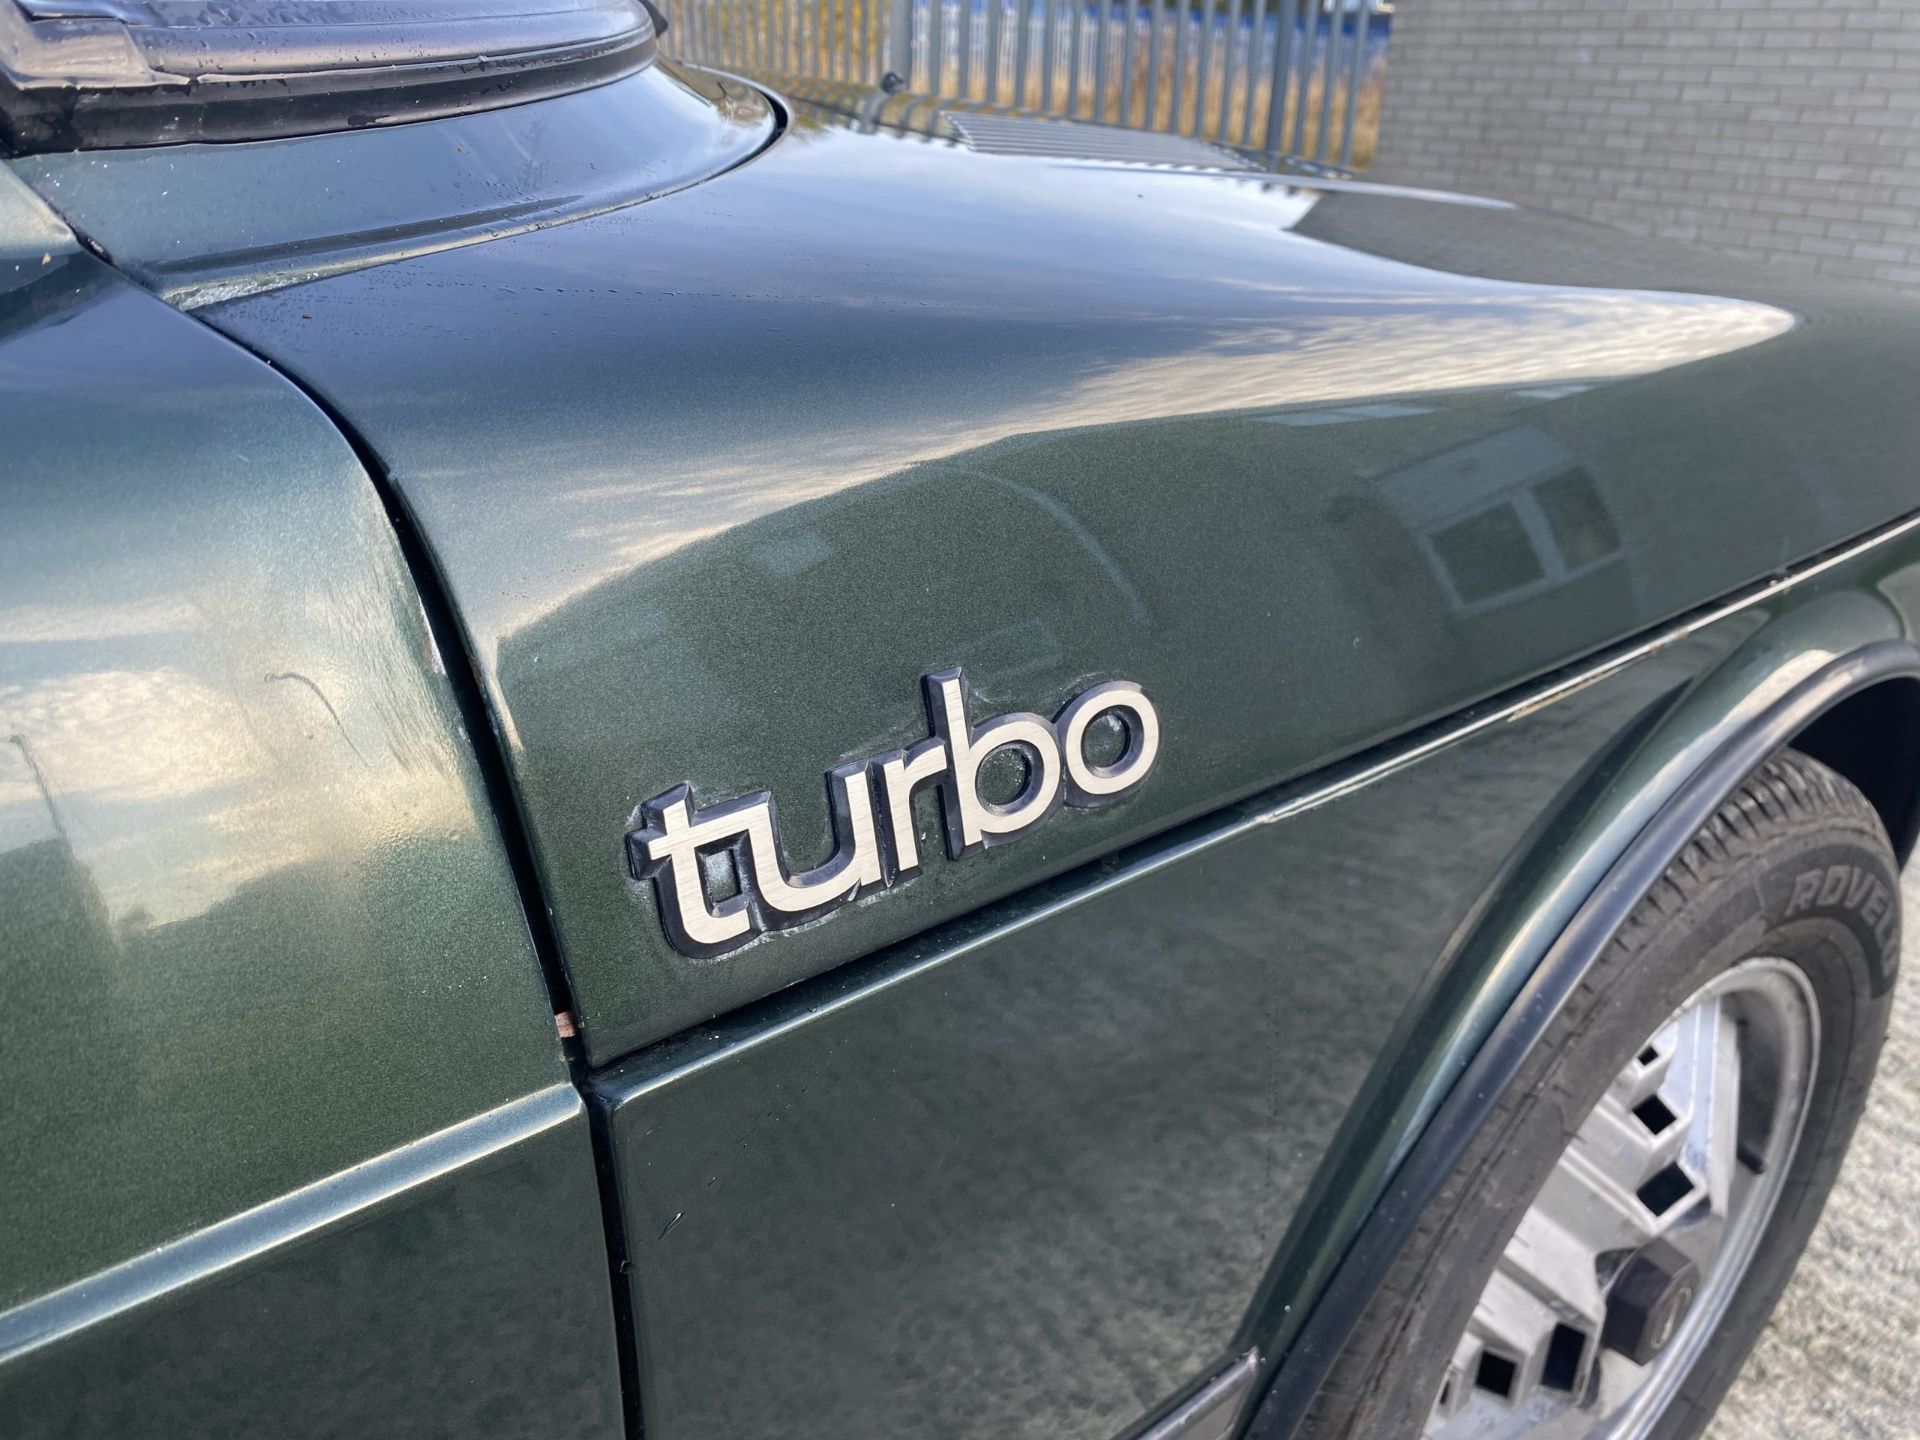 Saab 900 Turbo - Image 27 of 29